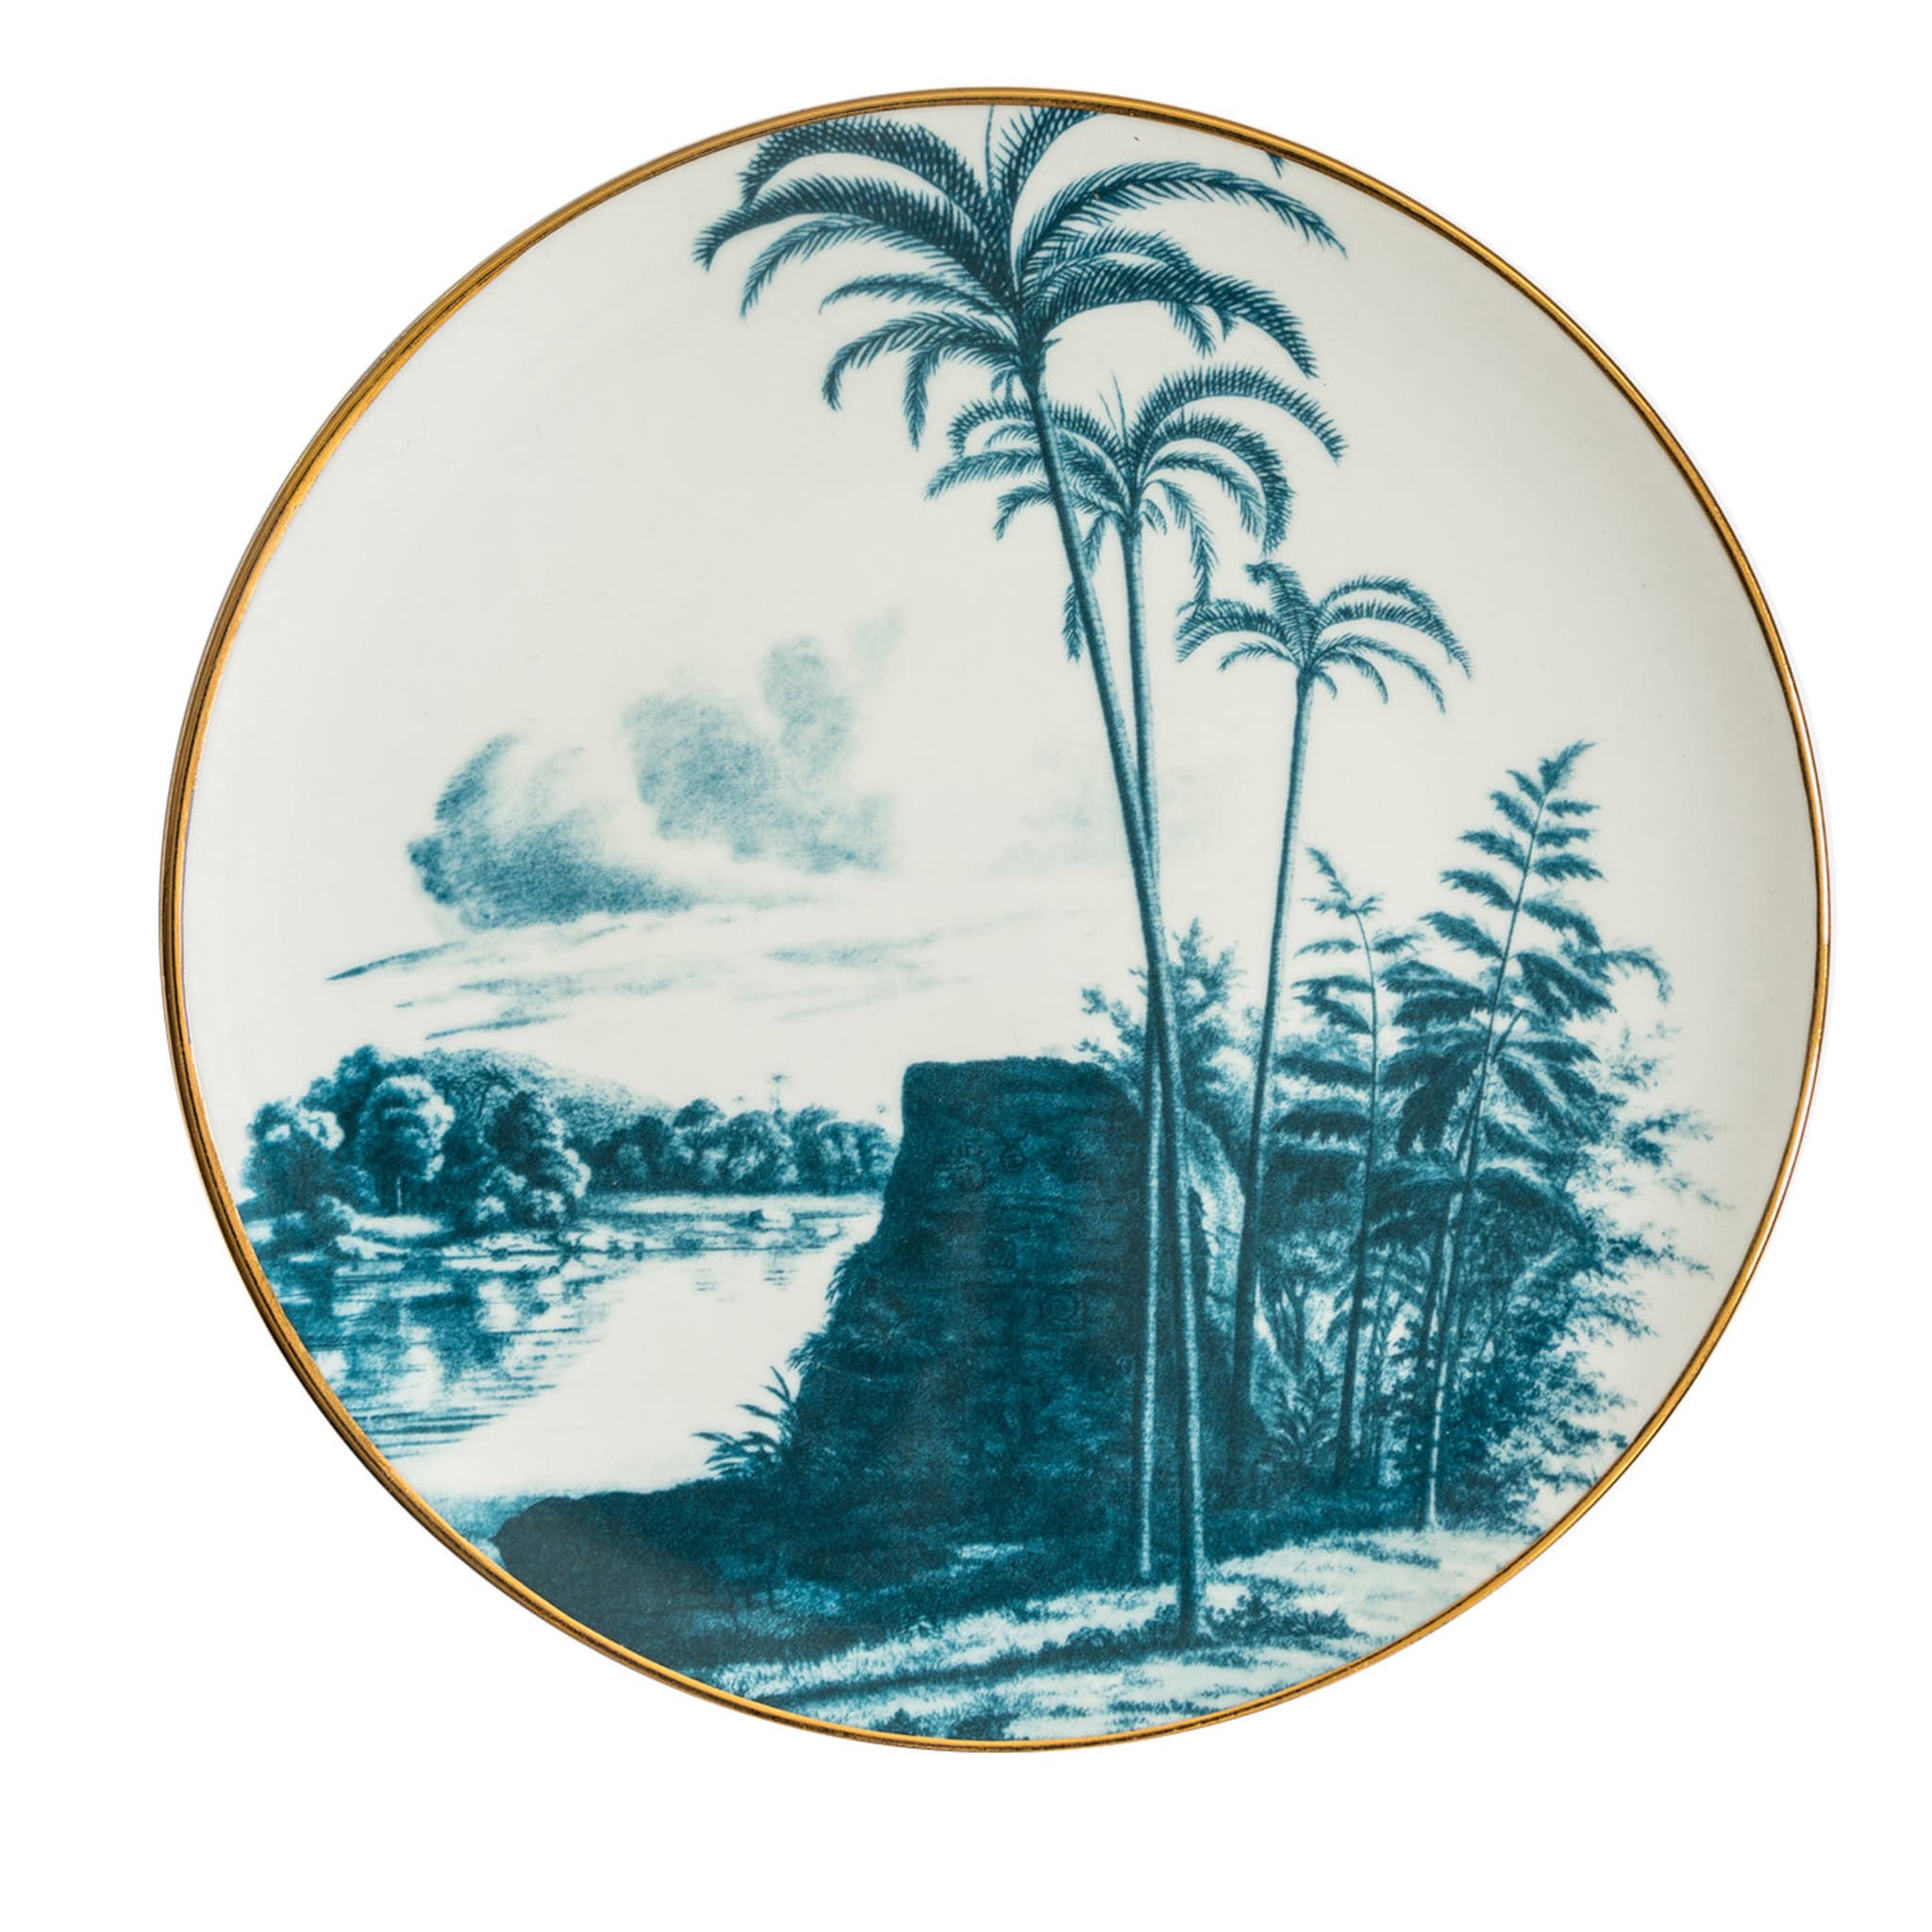 Las Palmas Porcelain Dinner Plate With Blue Tropical Lendscape #1 - Main view